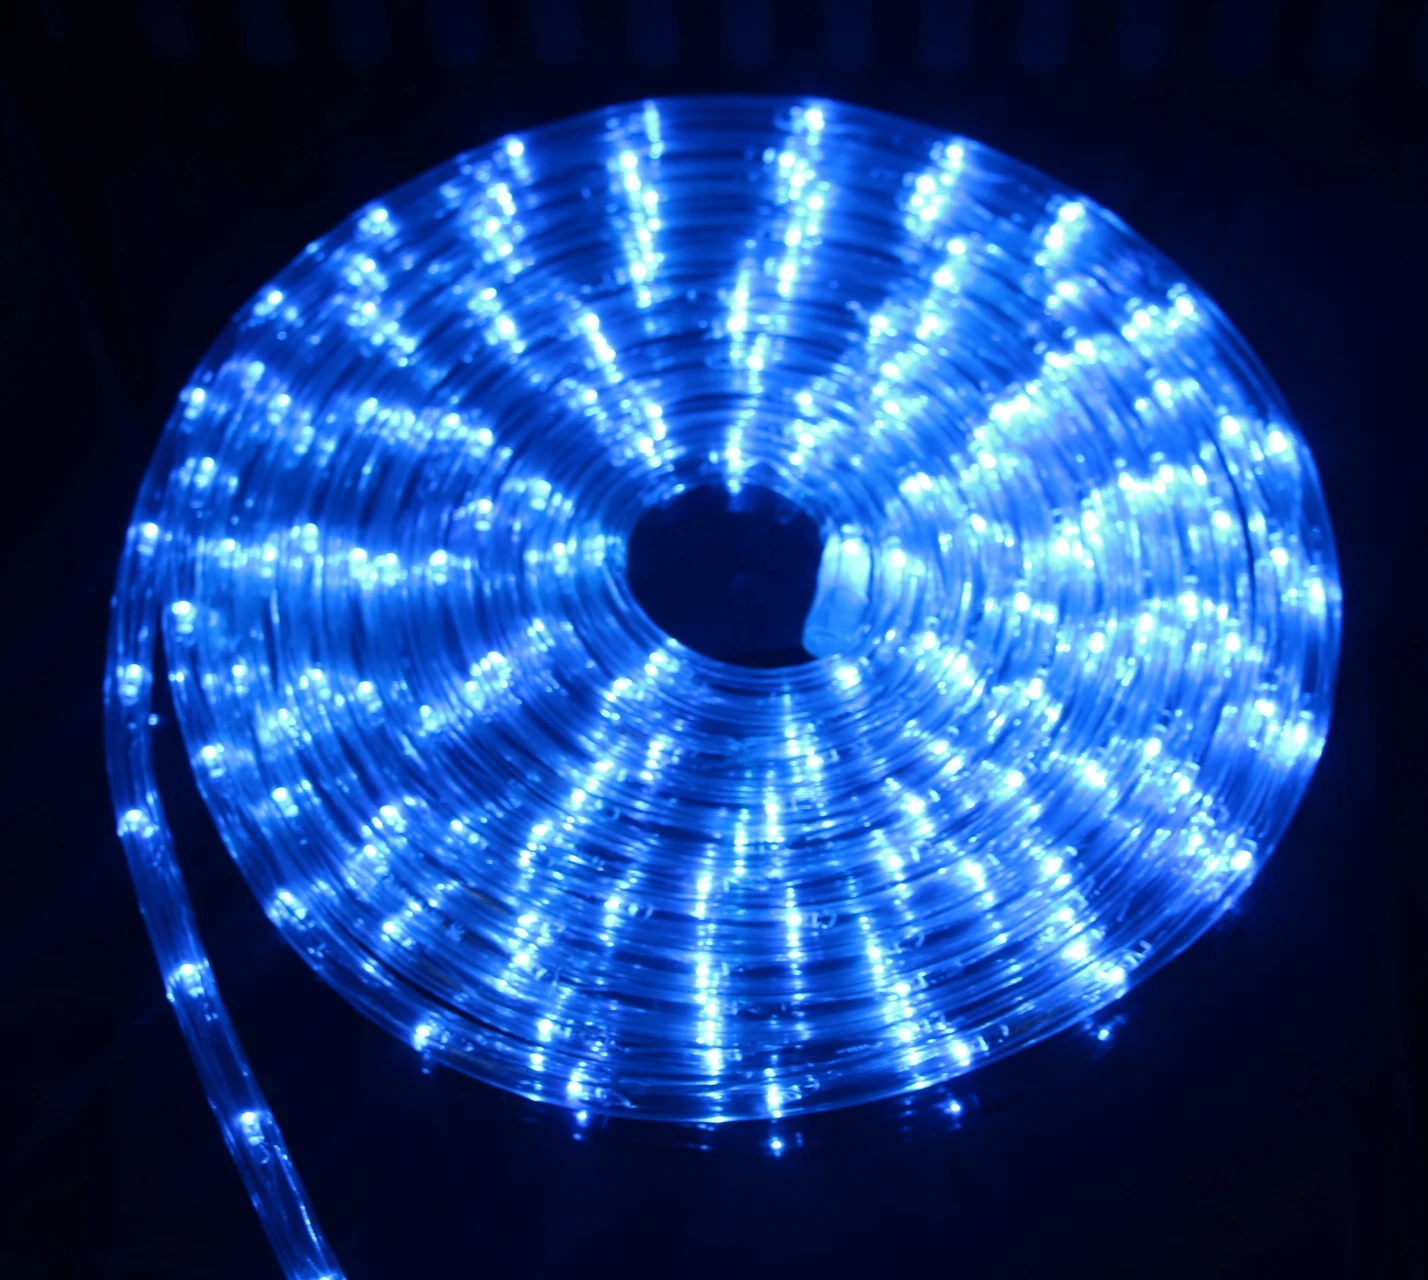 Светодиодный светильник RGB 20 светодиодный s/M 2 М-20 м водонепроницаемый IP67 AV220V Рождественское украшение Радужная наружная гирлянда с адаптером контроллера - Испускаемый цвет: Синий